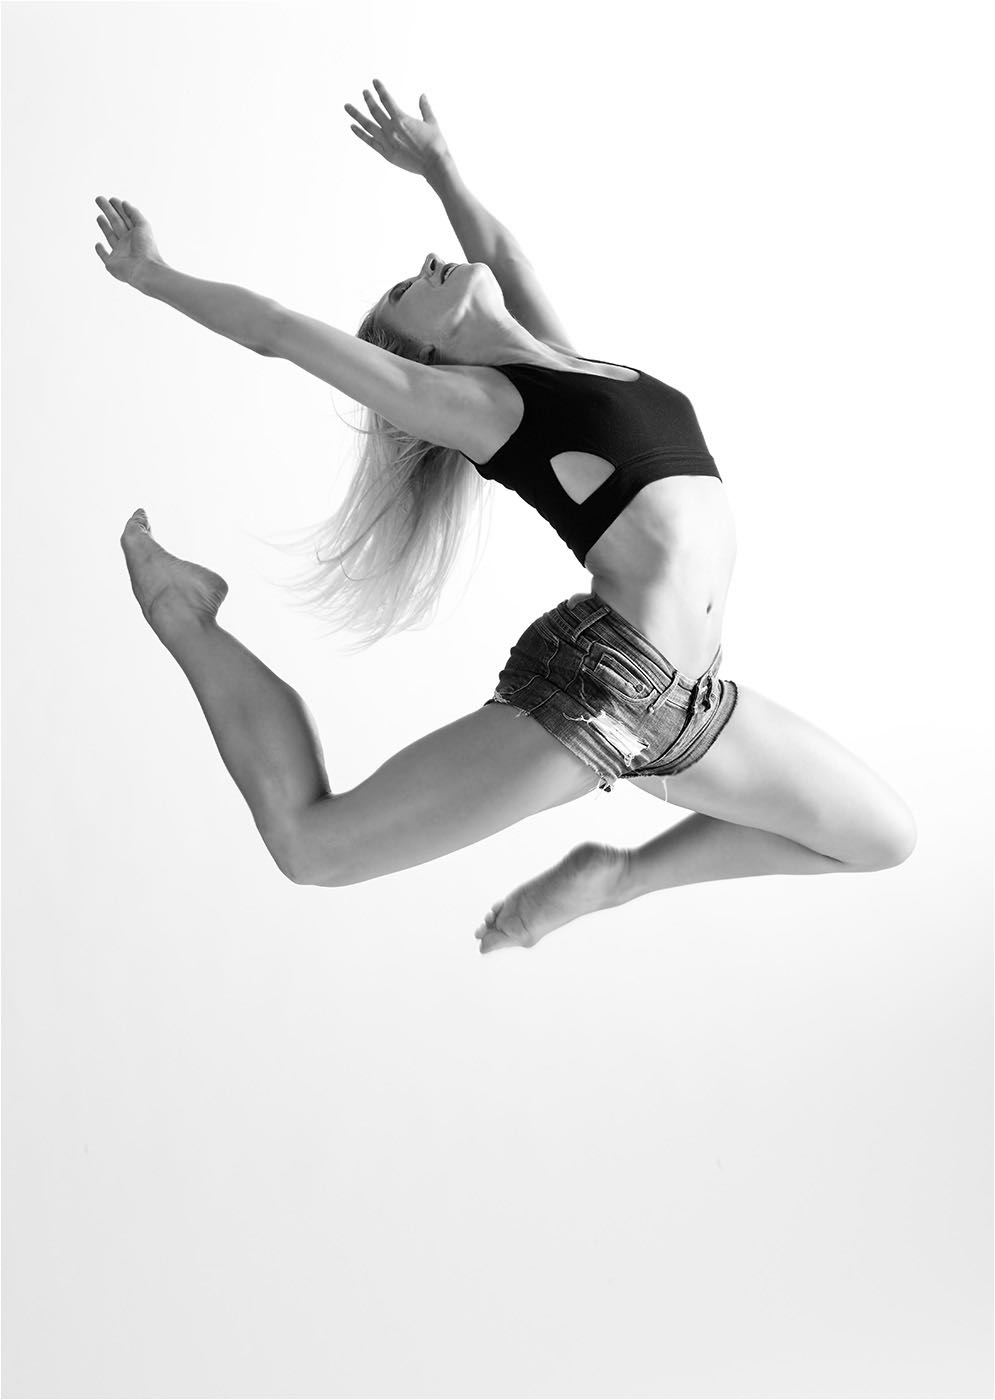  Tanzfotografie. Fliegende Pose einer Tänzerin des Chemnitzer Ballettes im Studio in Chemnitz. Weisser Hintergrund und Studioblitzanlage mit Mittelformat aufgenommen. Copyright by Fotostudio Jörg Riethausen 